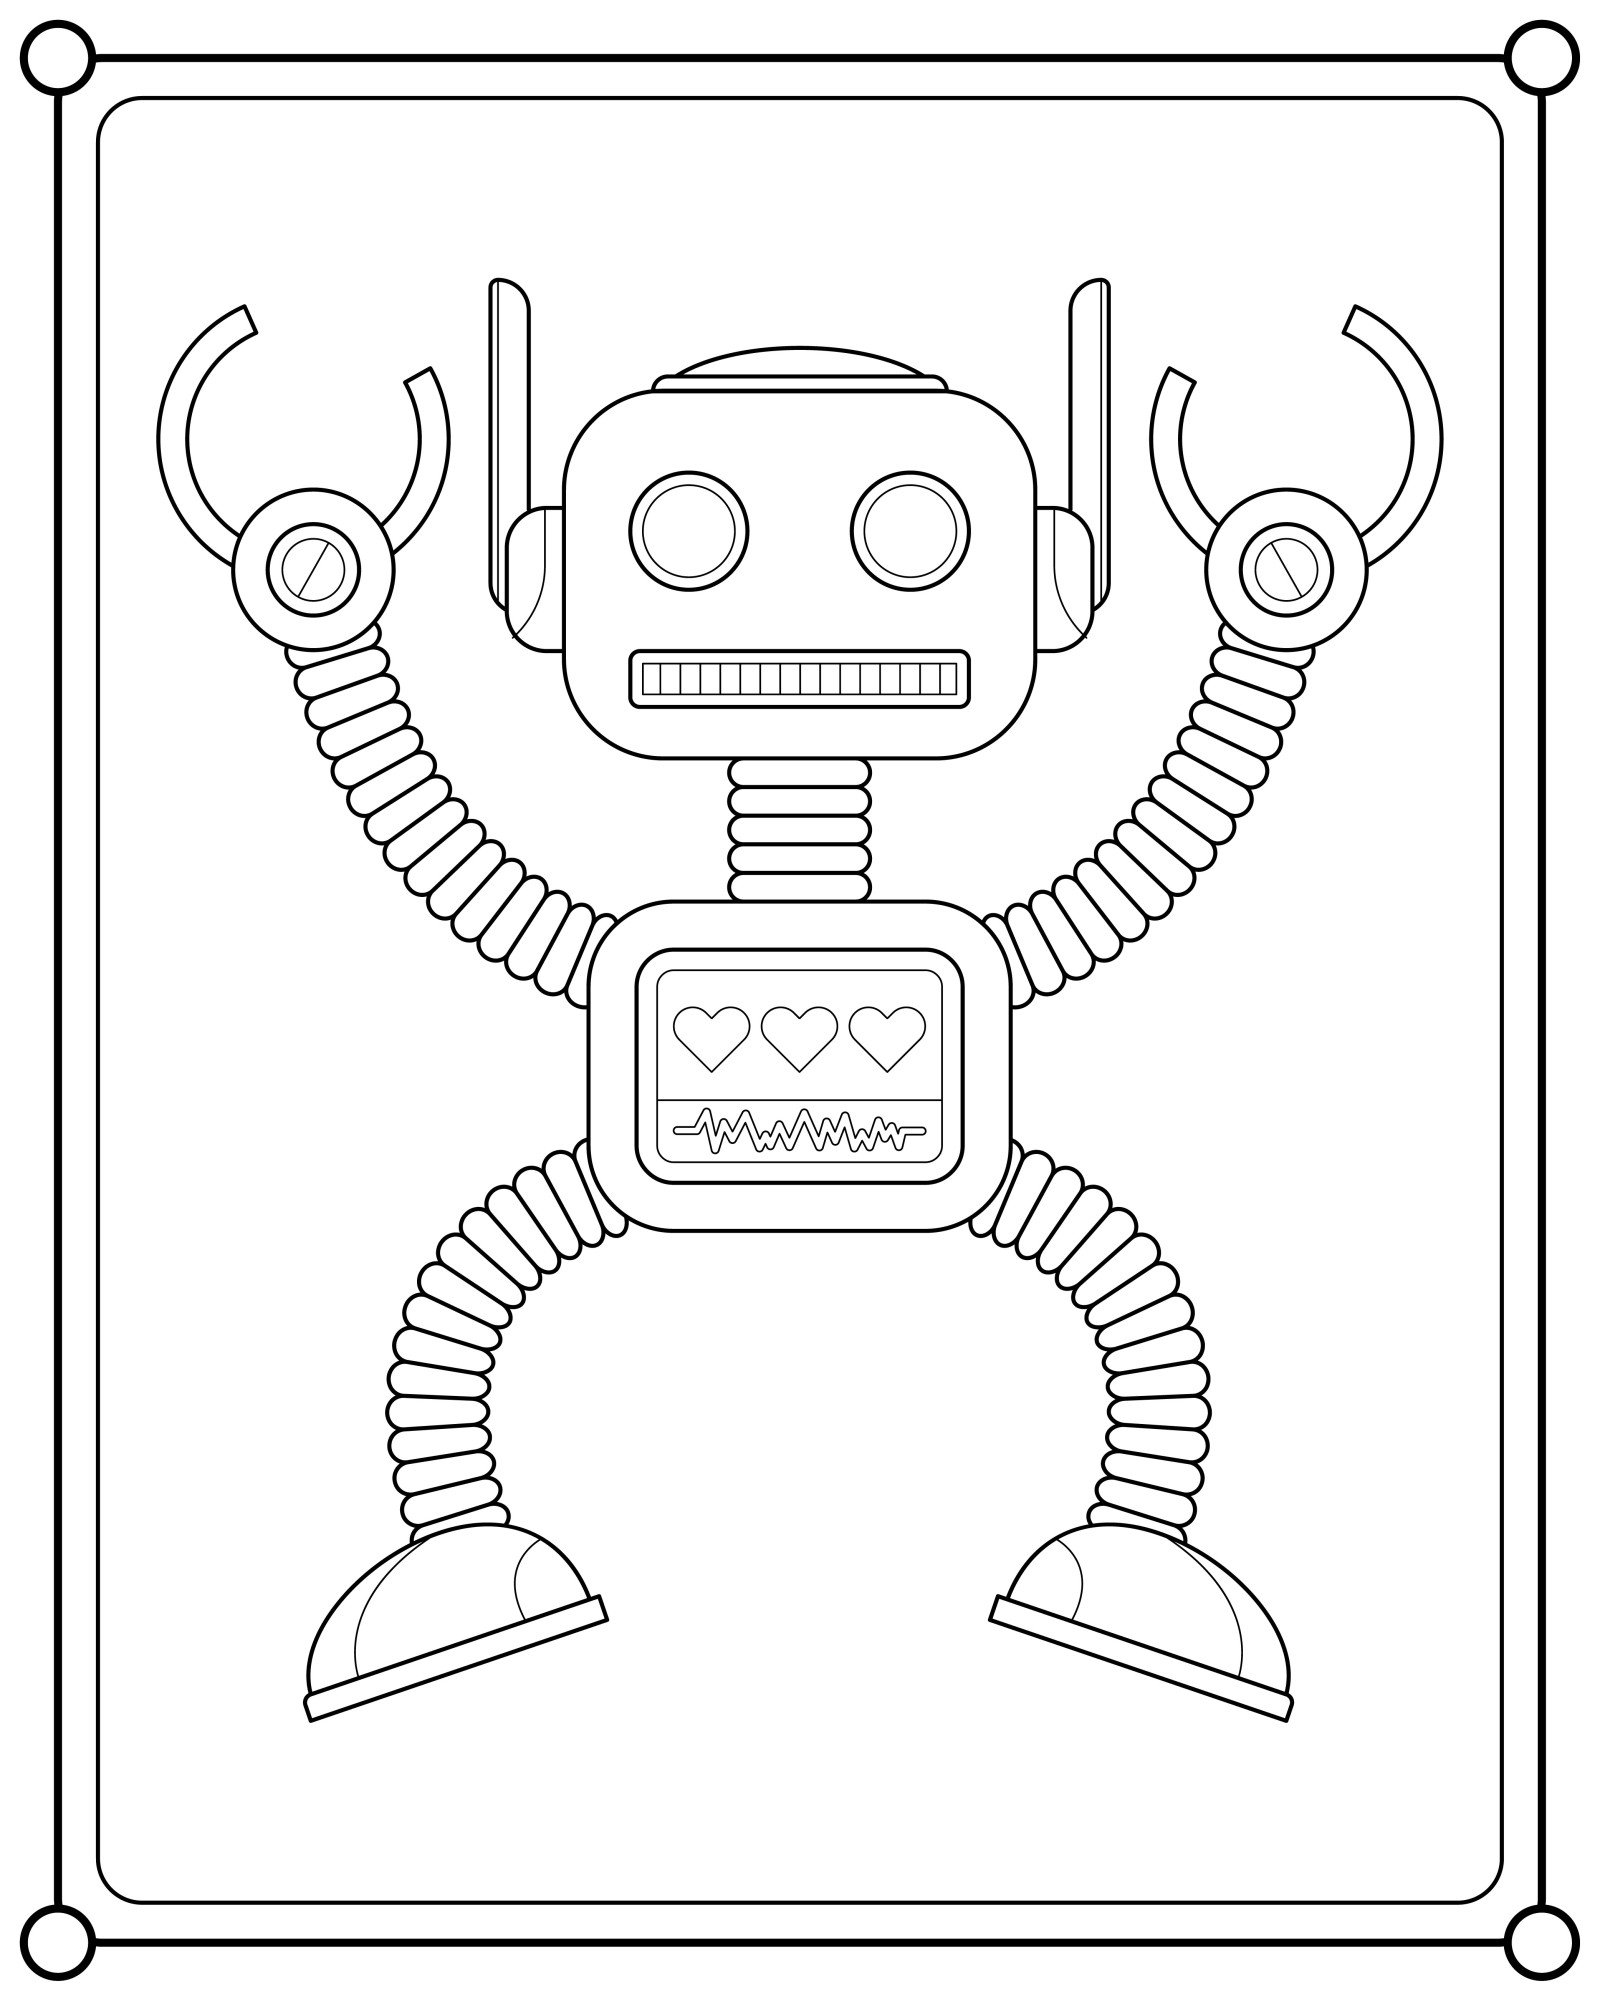 Раскраска для детей: симпатичный робот обезьянка